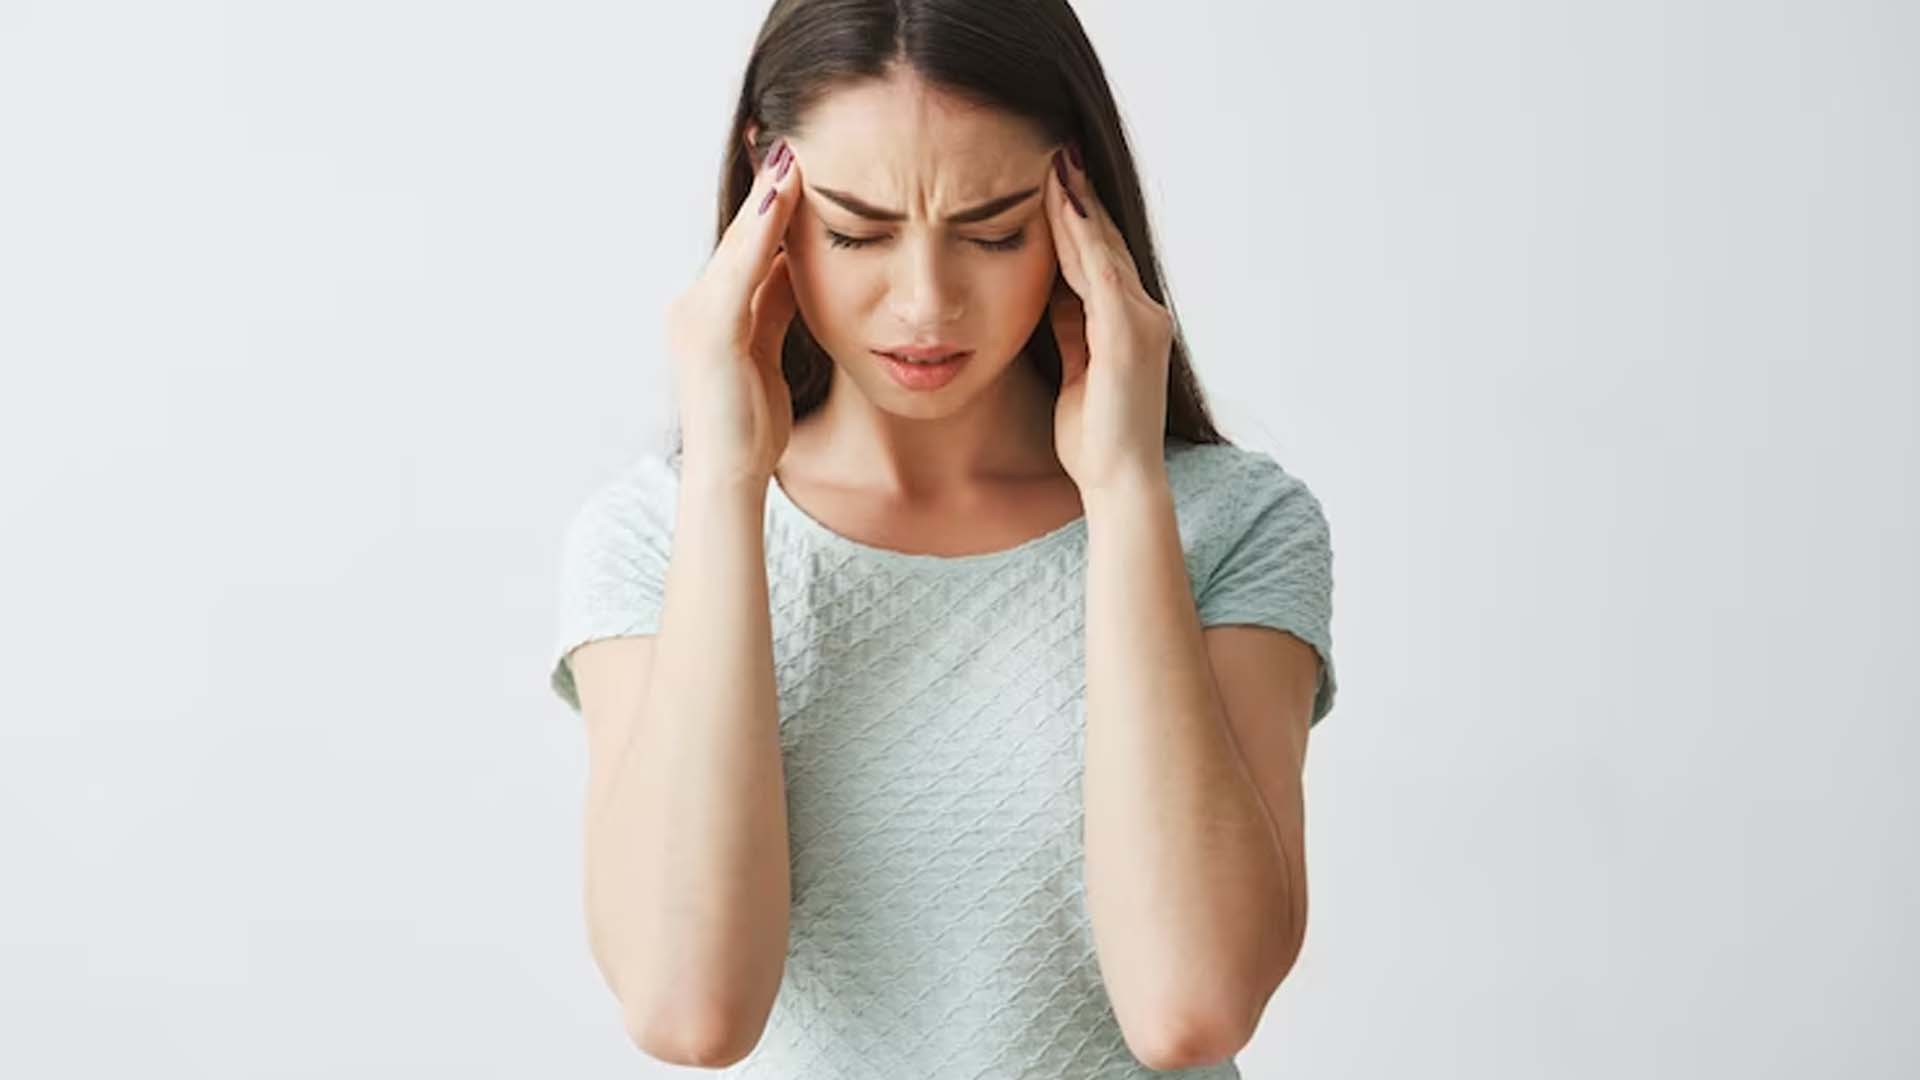 Does Gastric Cause Headache?